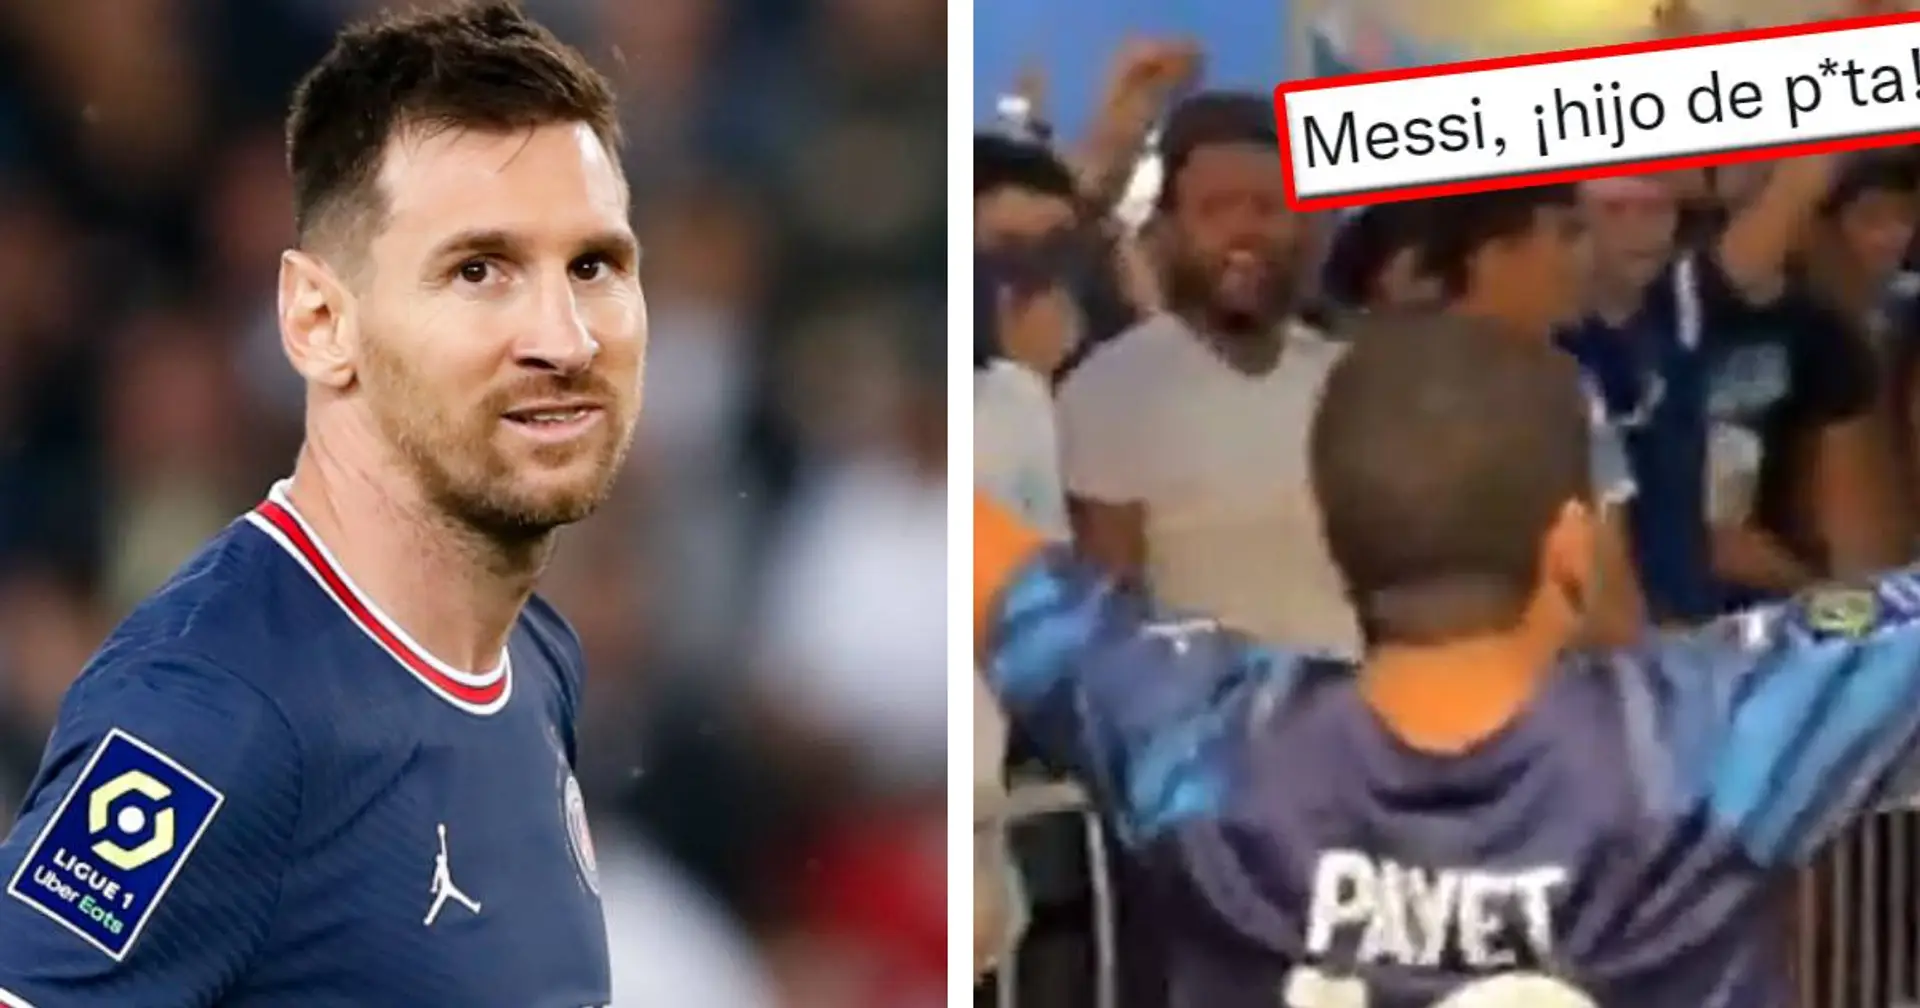 "Un complexe d’infériorité": les fans du PSG réagissent aux insultes marseillaises envers Messi en plein accueil de leur nouvelle recrue